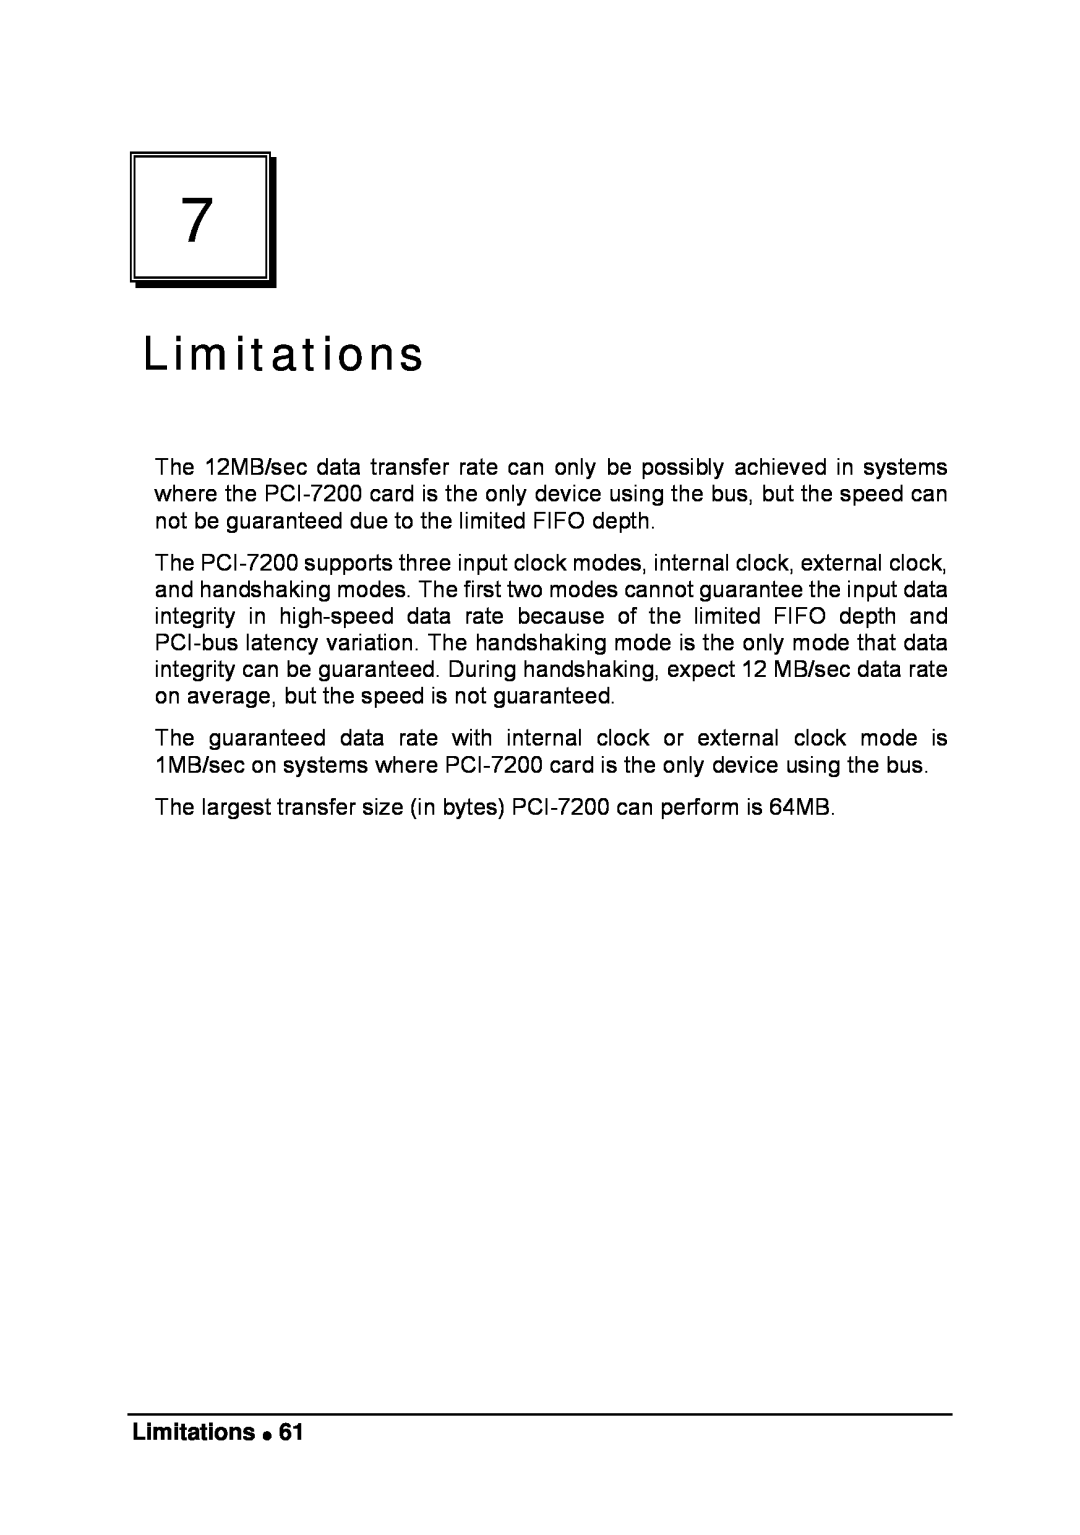 Intel LPCI-7200S manual Limitations 